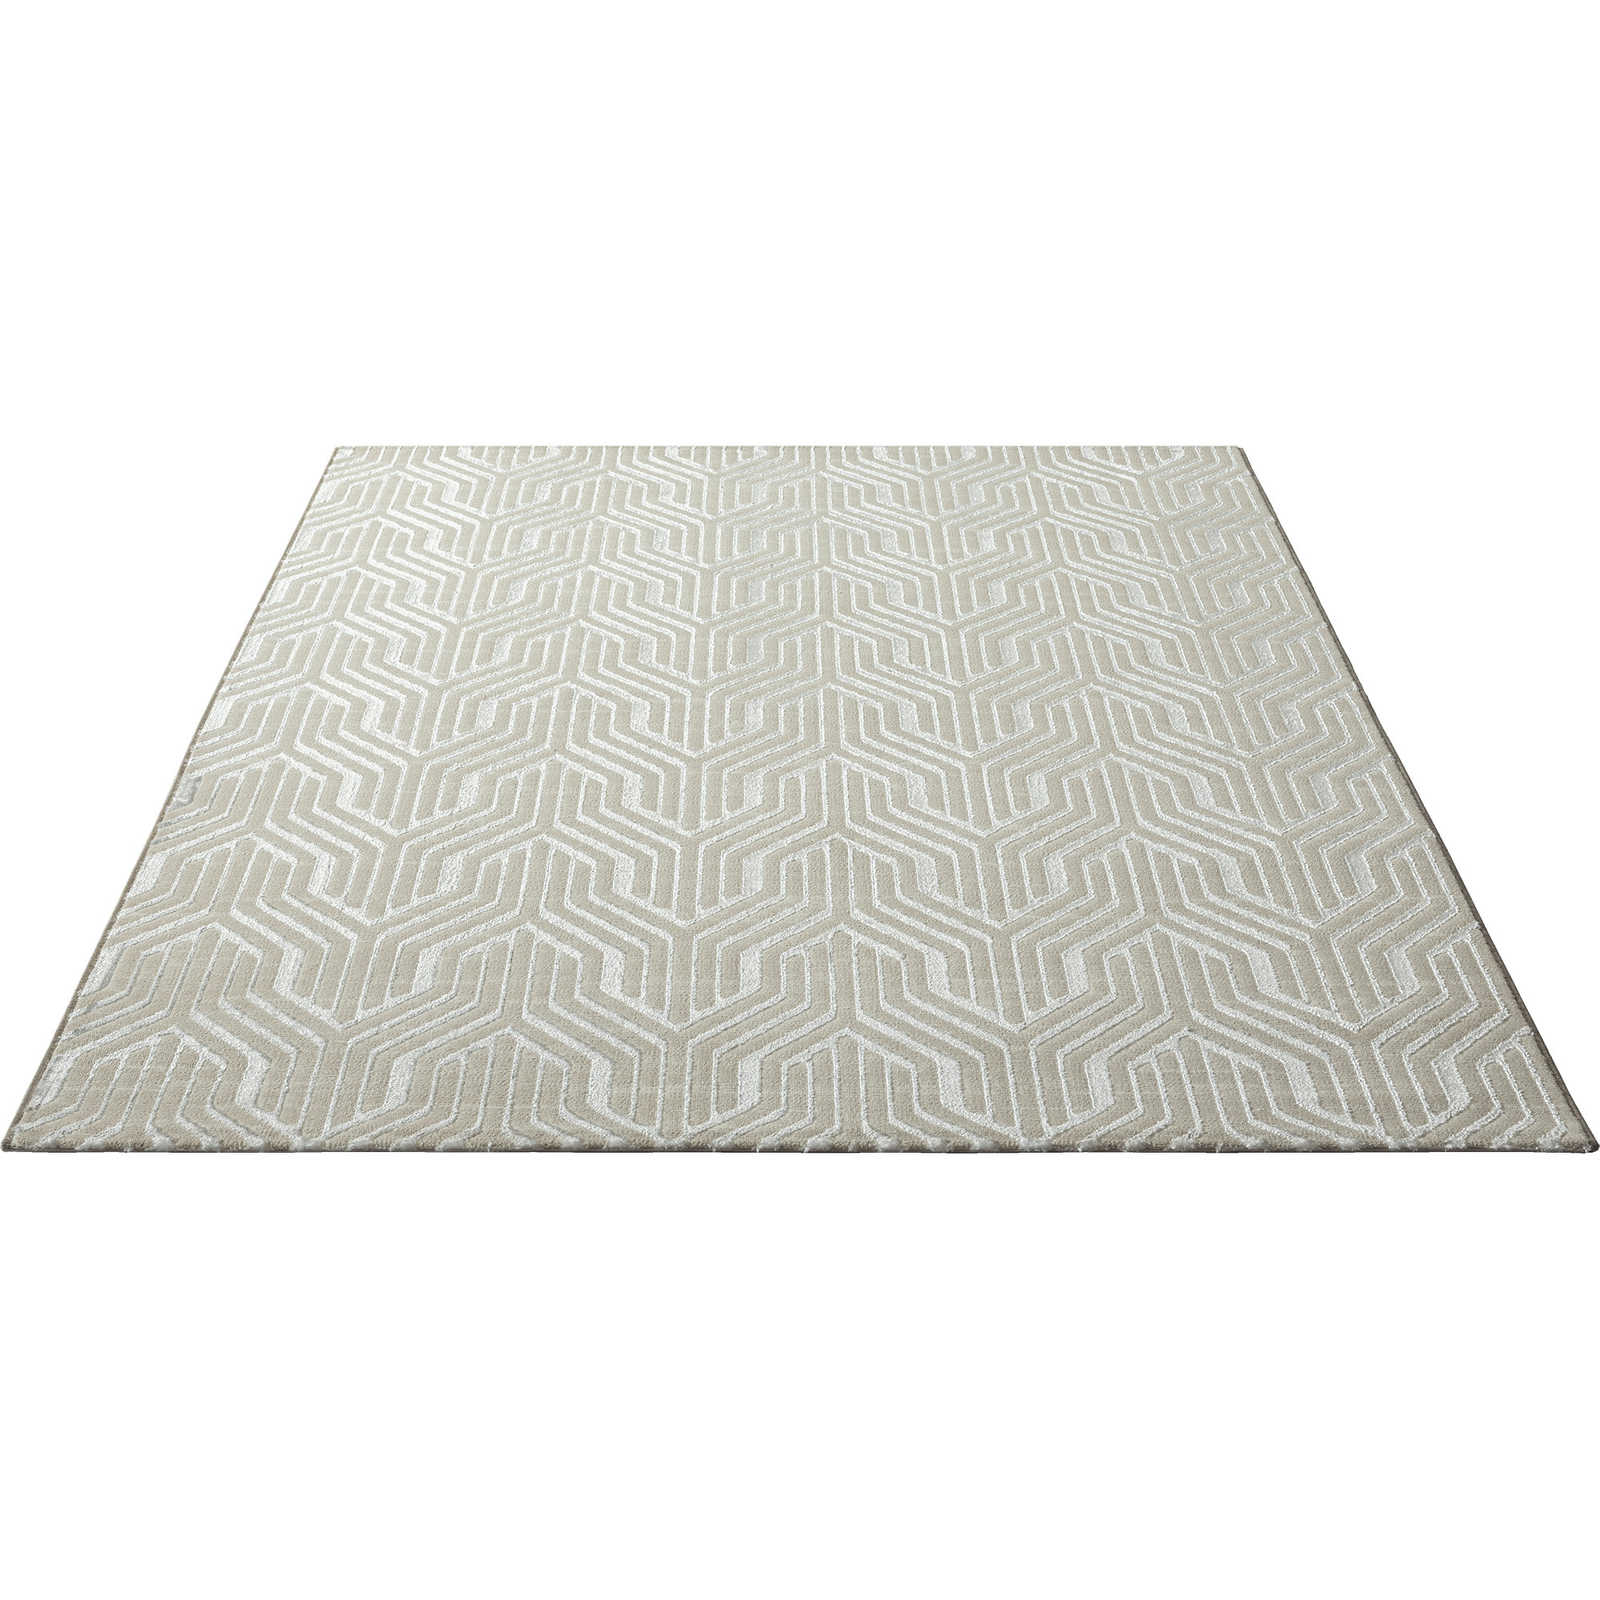 Soft pile carpet in cream - 290 x 200 cm
